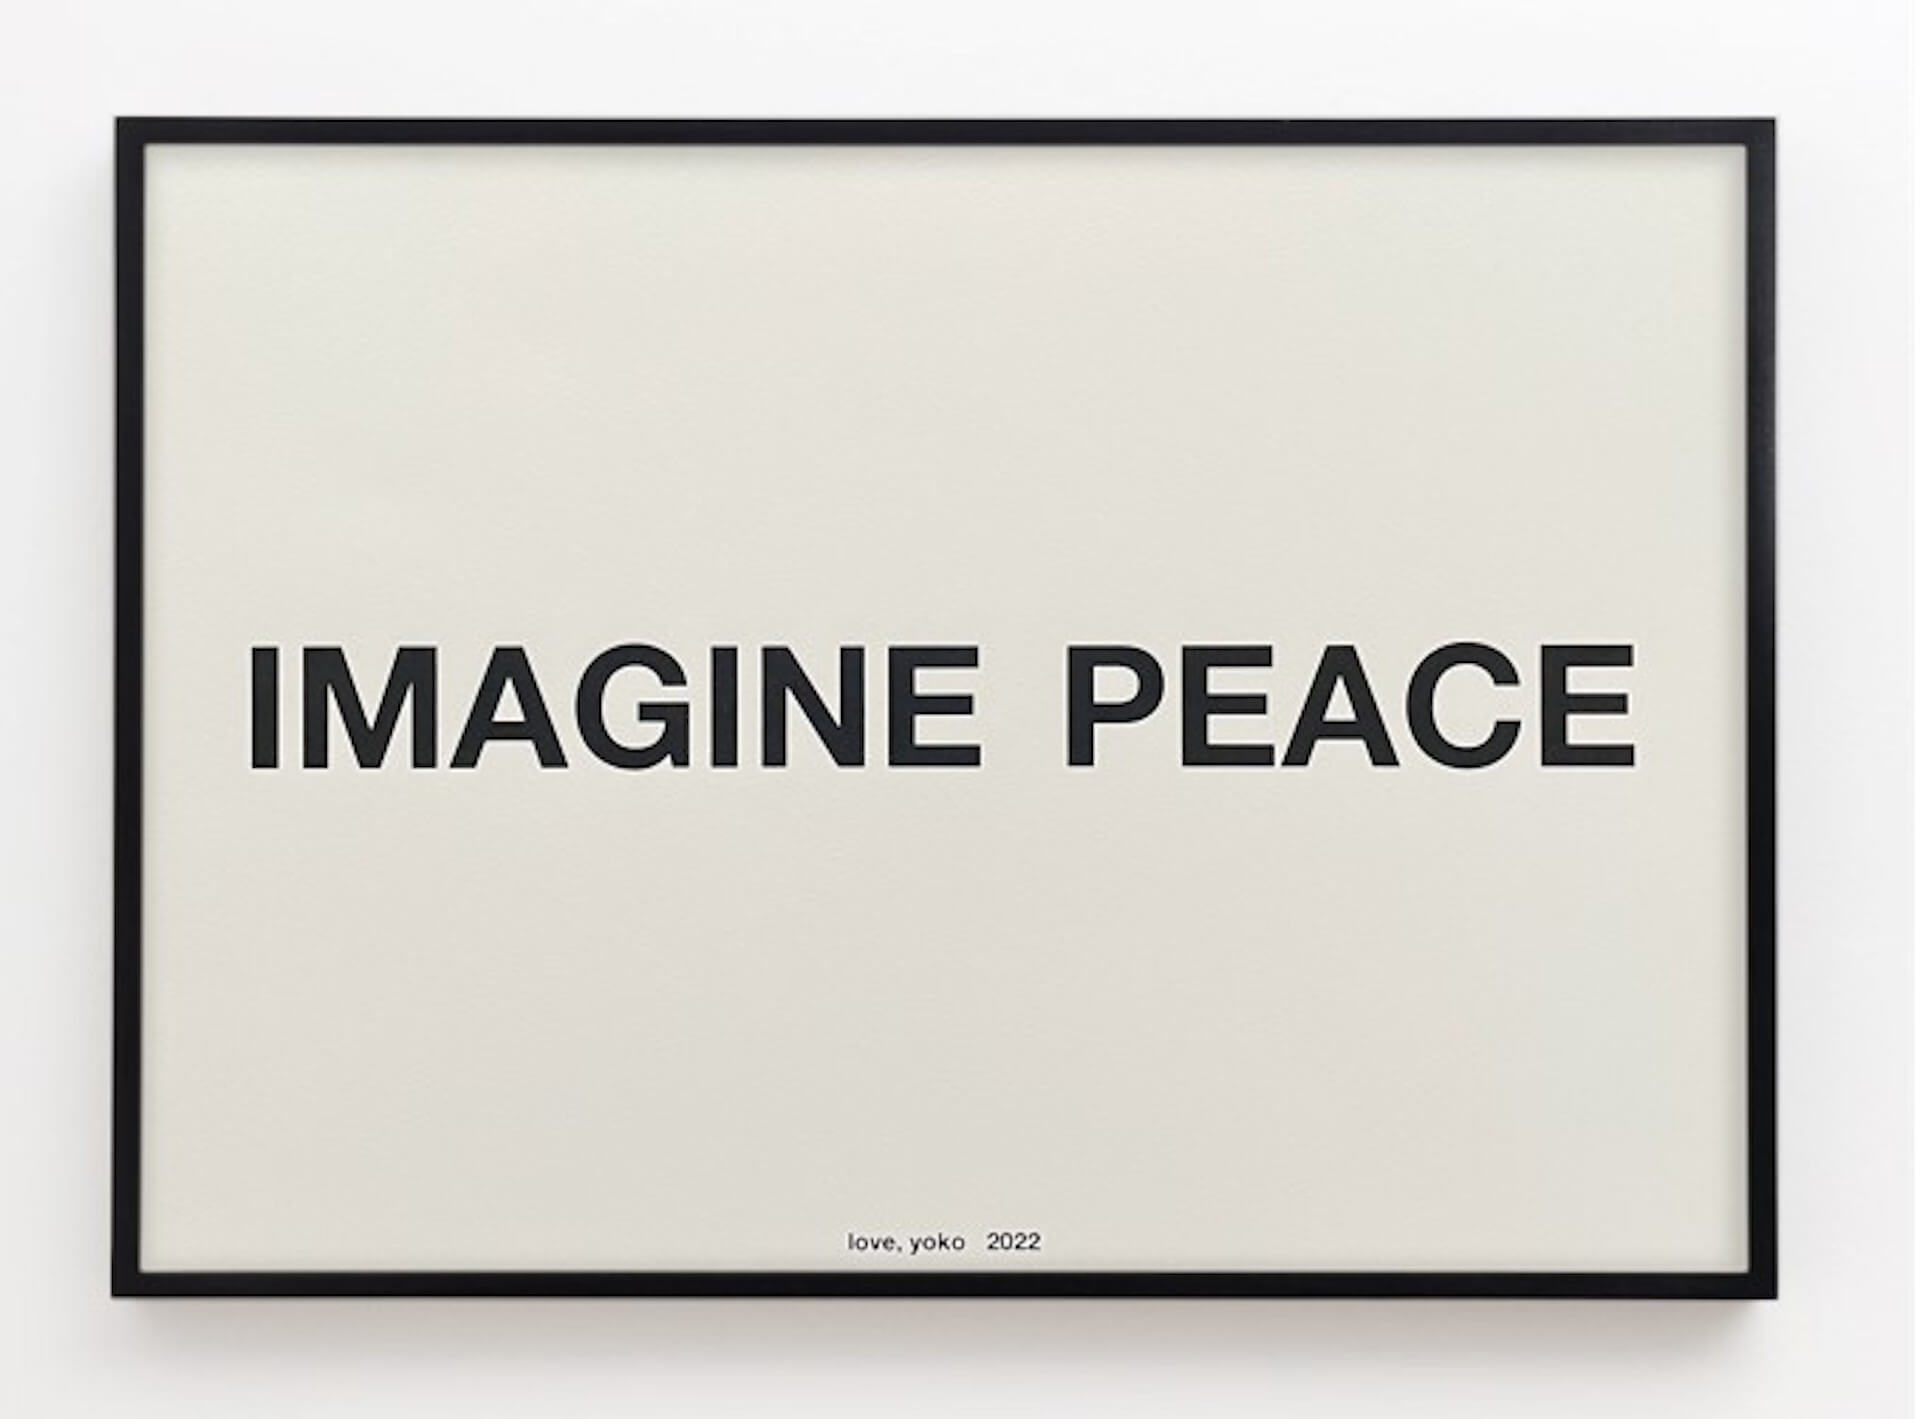 ヨーコ・オノが平和を願う「IMAGINE PEACE」キャンペーンを世界各地で実施｜シルクスクリーン・プリントをチャリティ制作 art220315_yoko-ono-imagine-peace-09